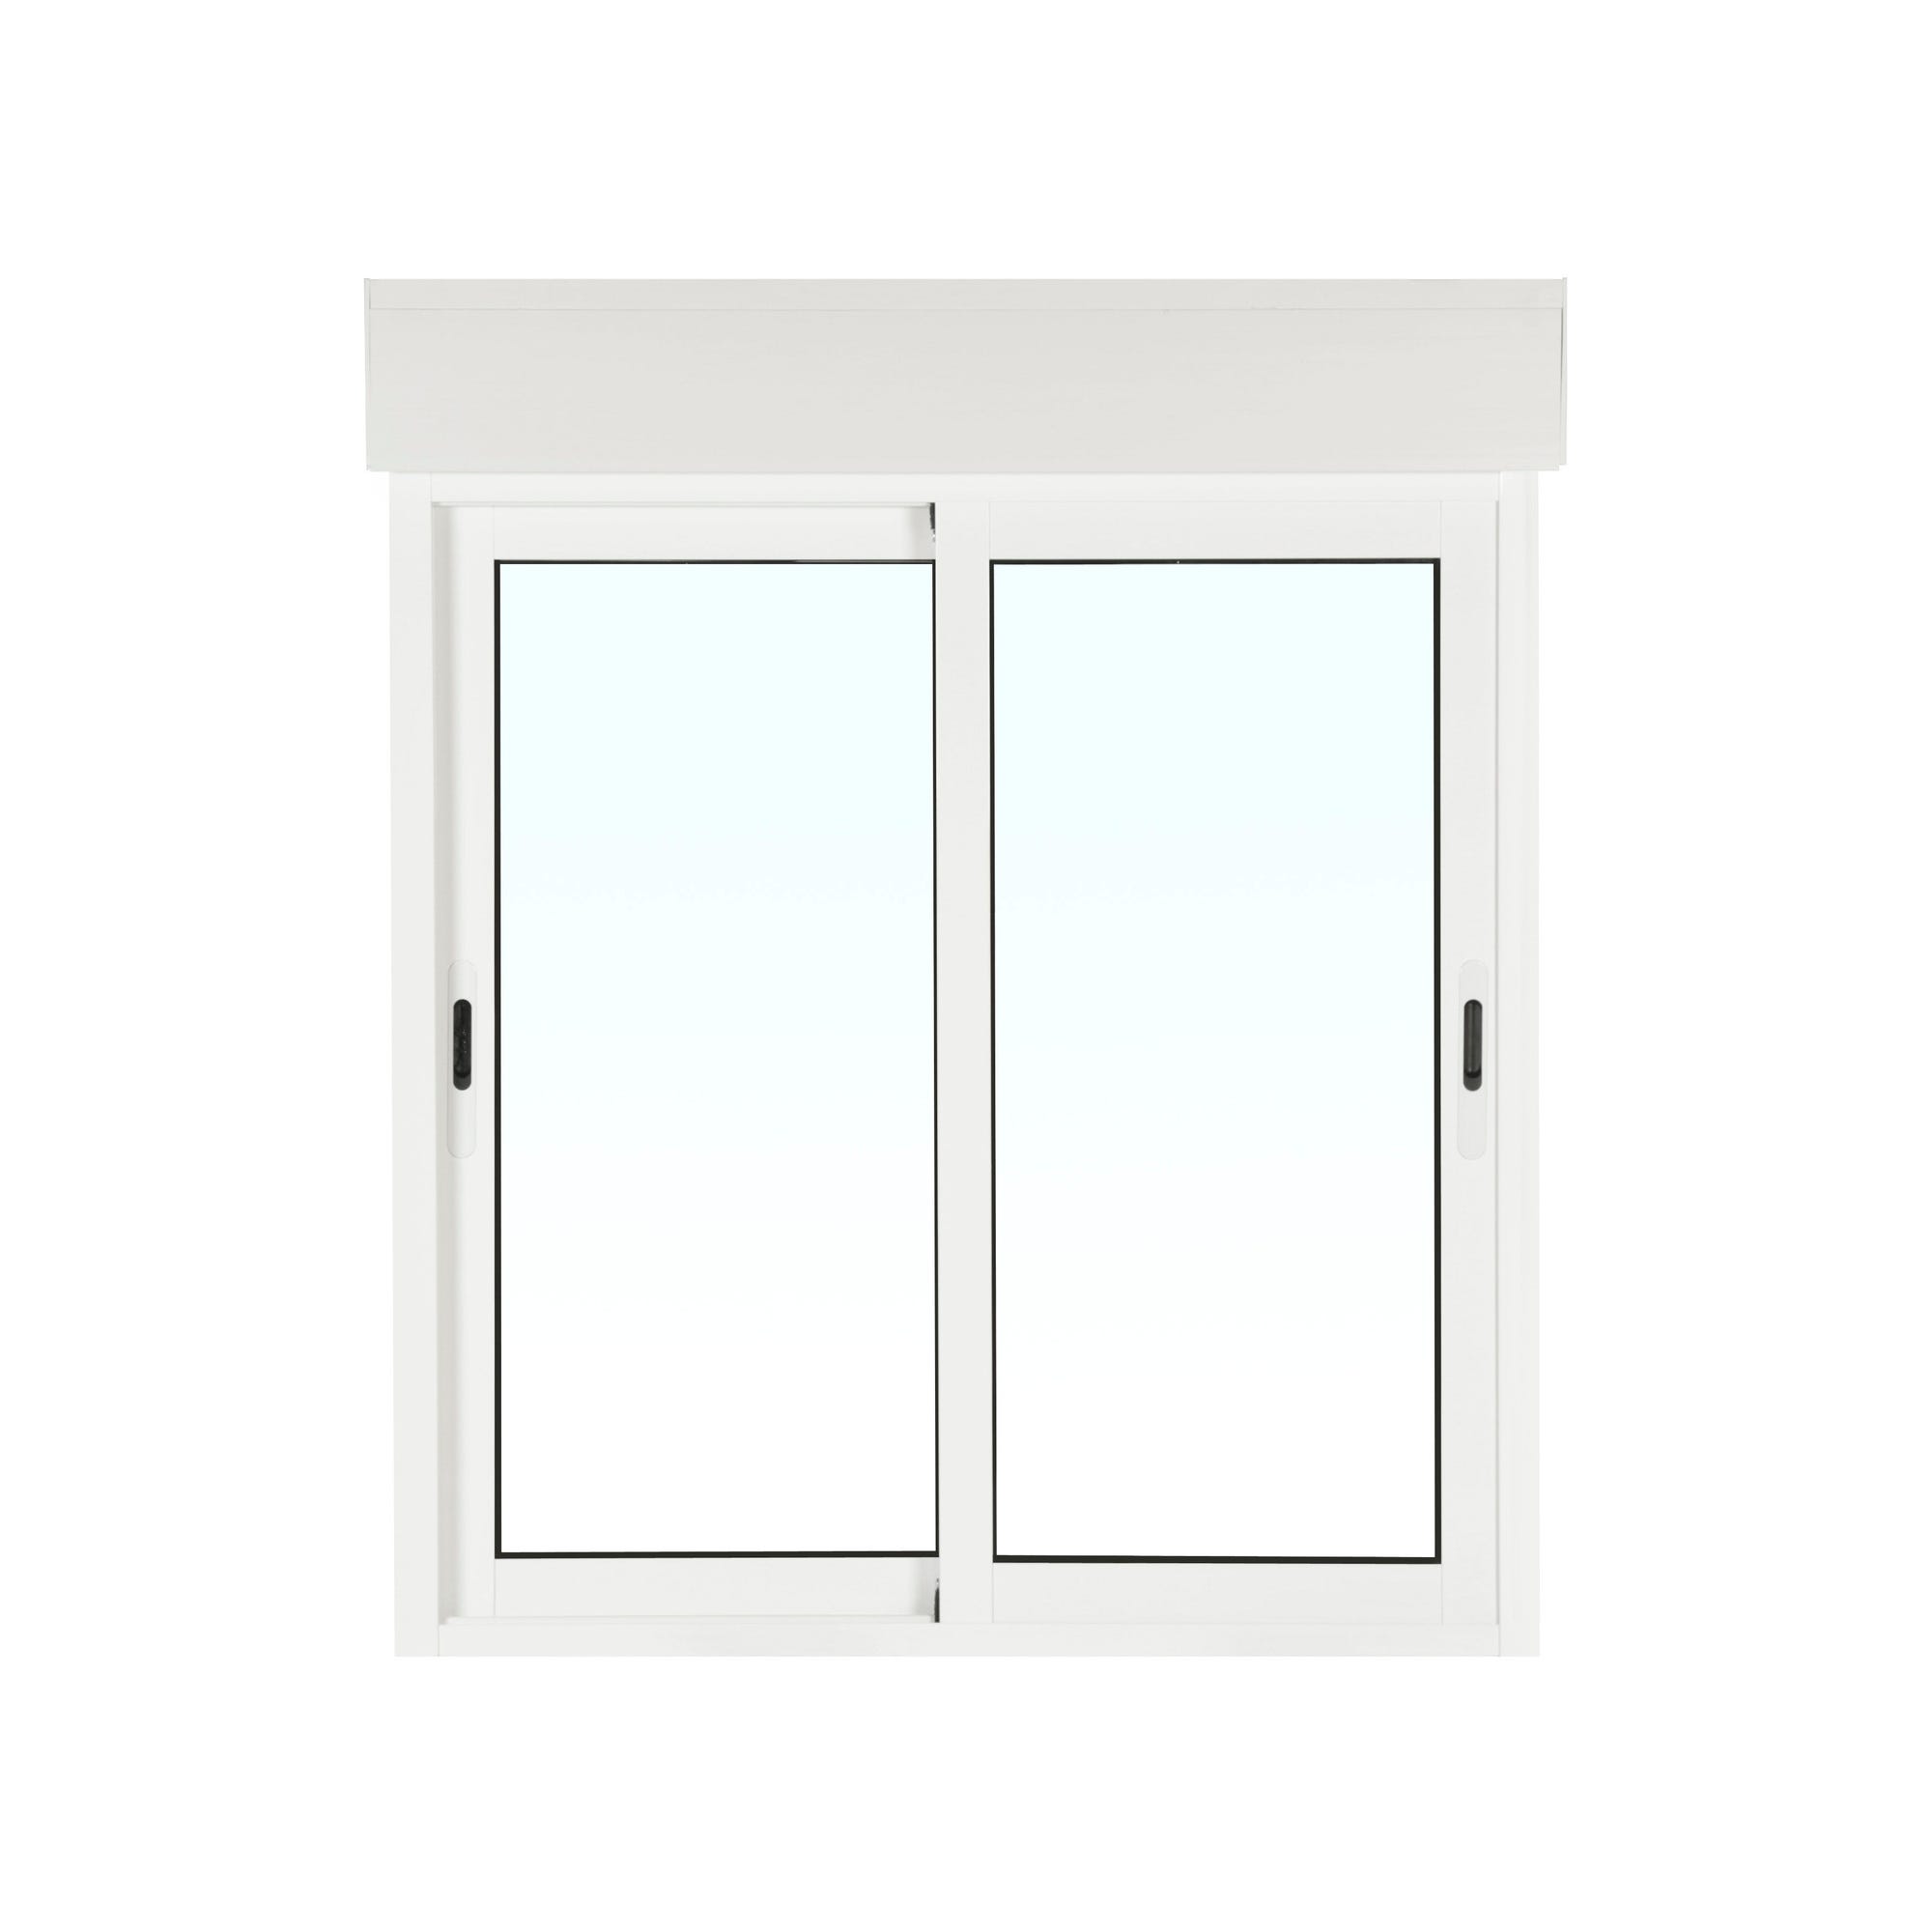 Fenêtre aluminium H.125 x l.120 cm coulissant 2 vantaux avec volet roulant intégré blanc 3